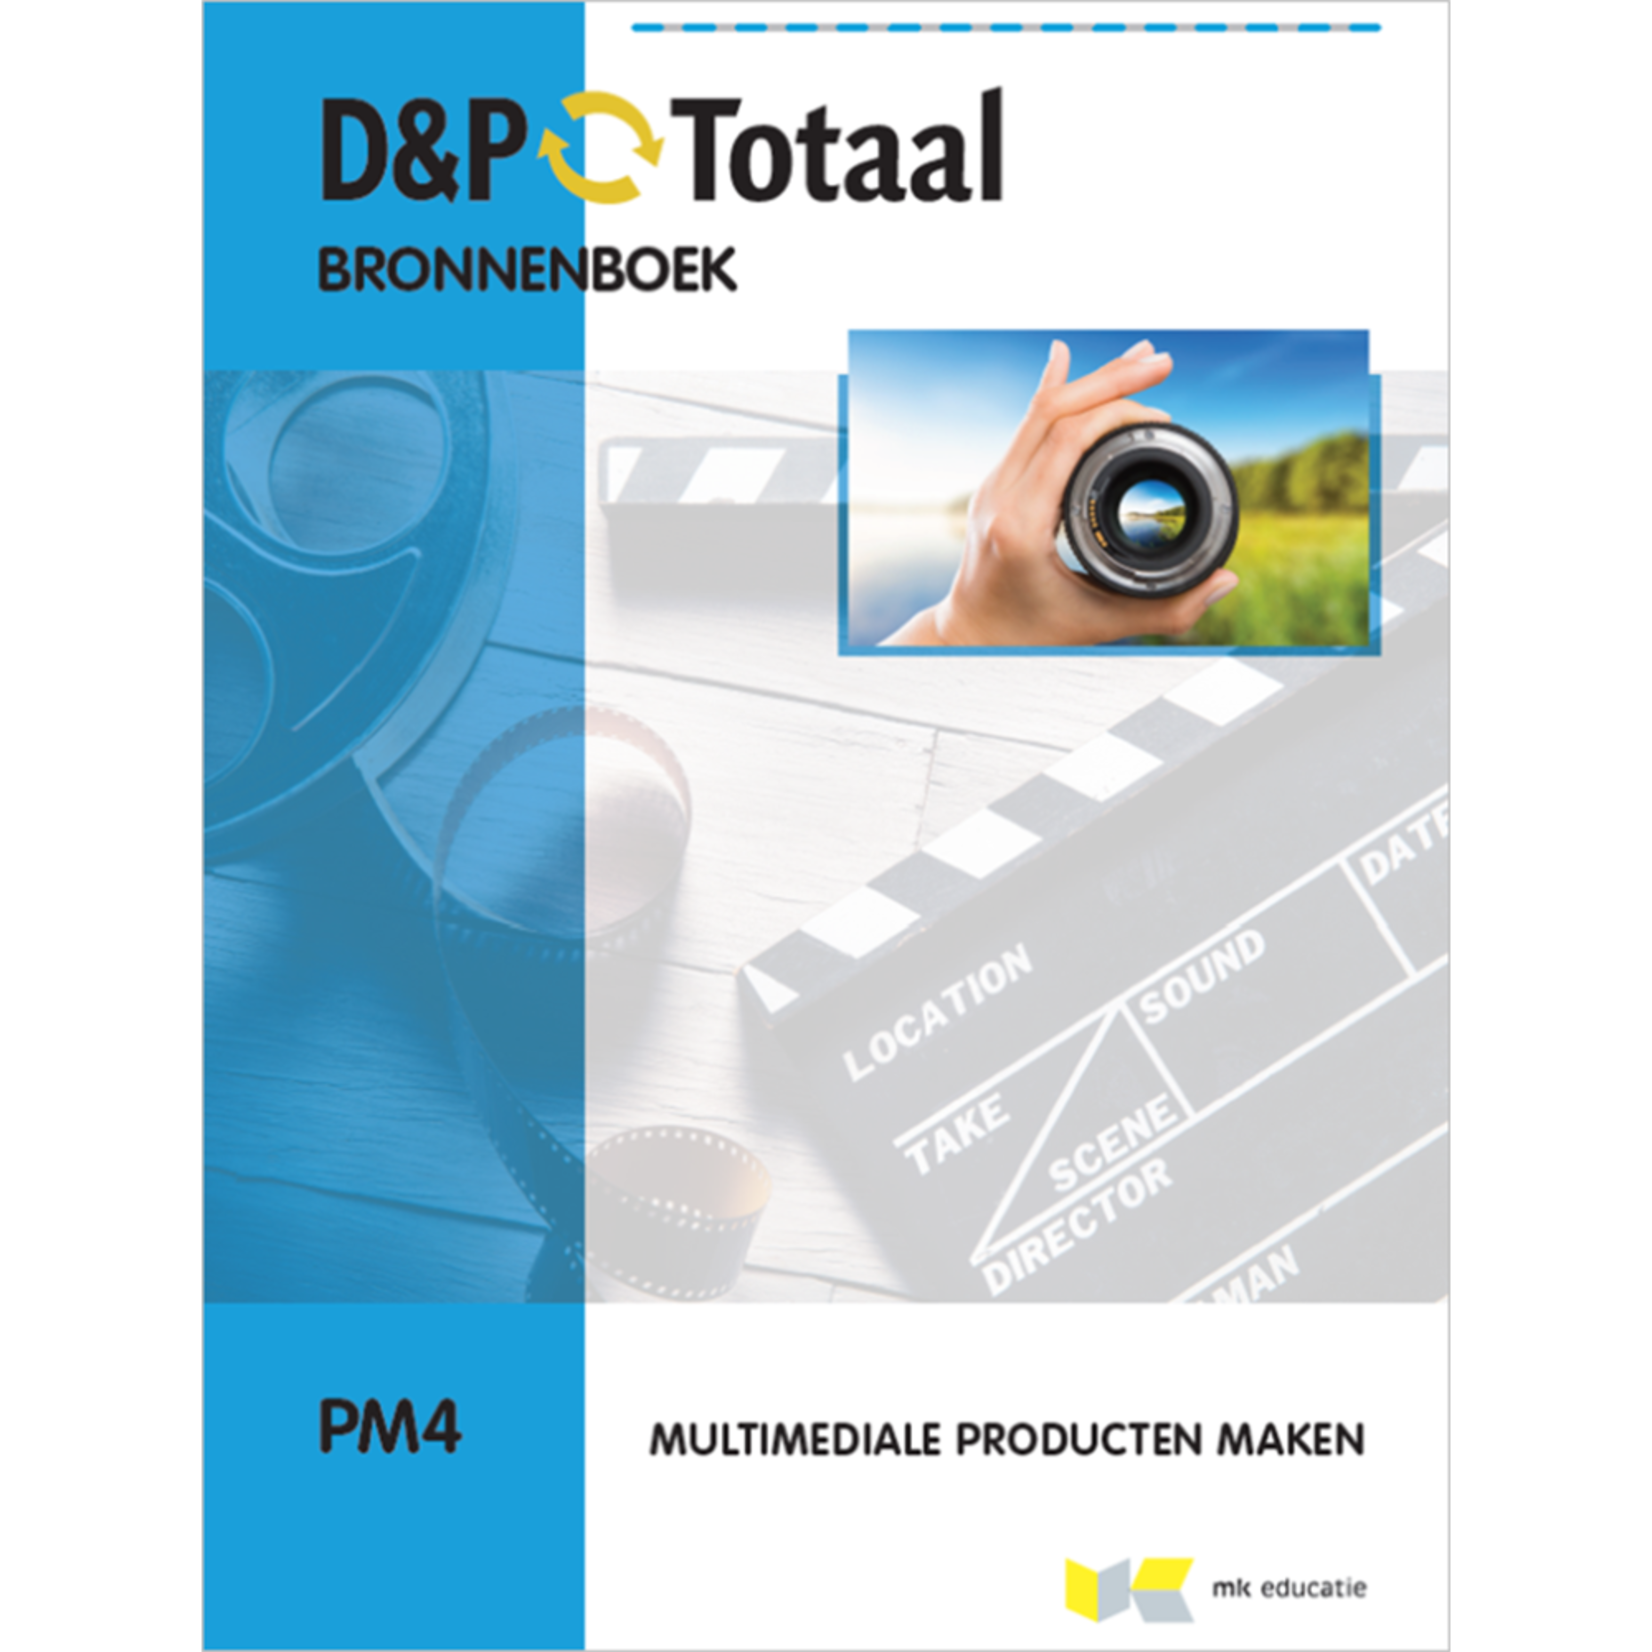 D&P-Totaal Bronnenboek - PM4 Multimediale producten maken